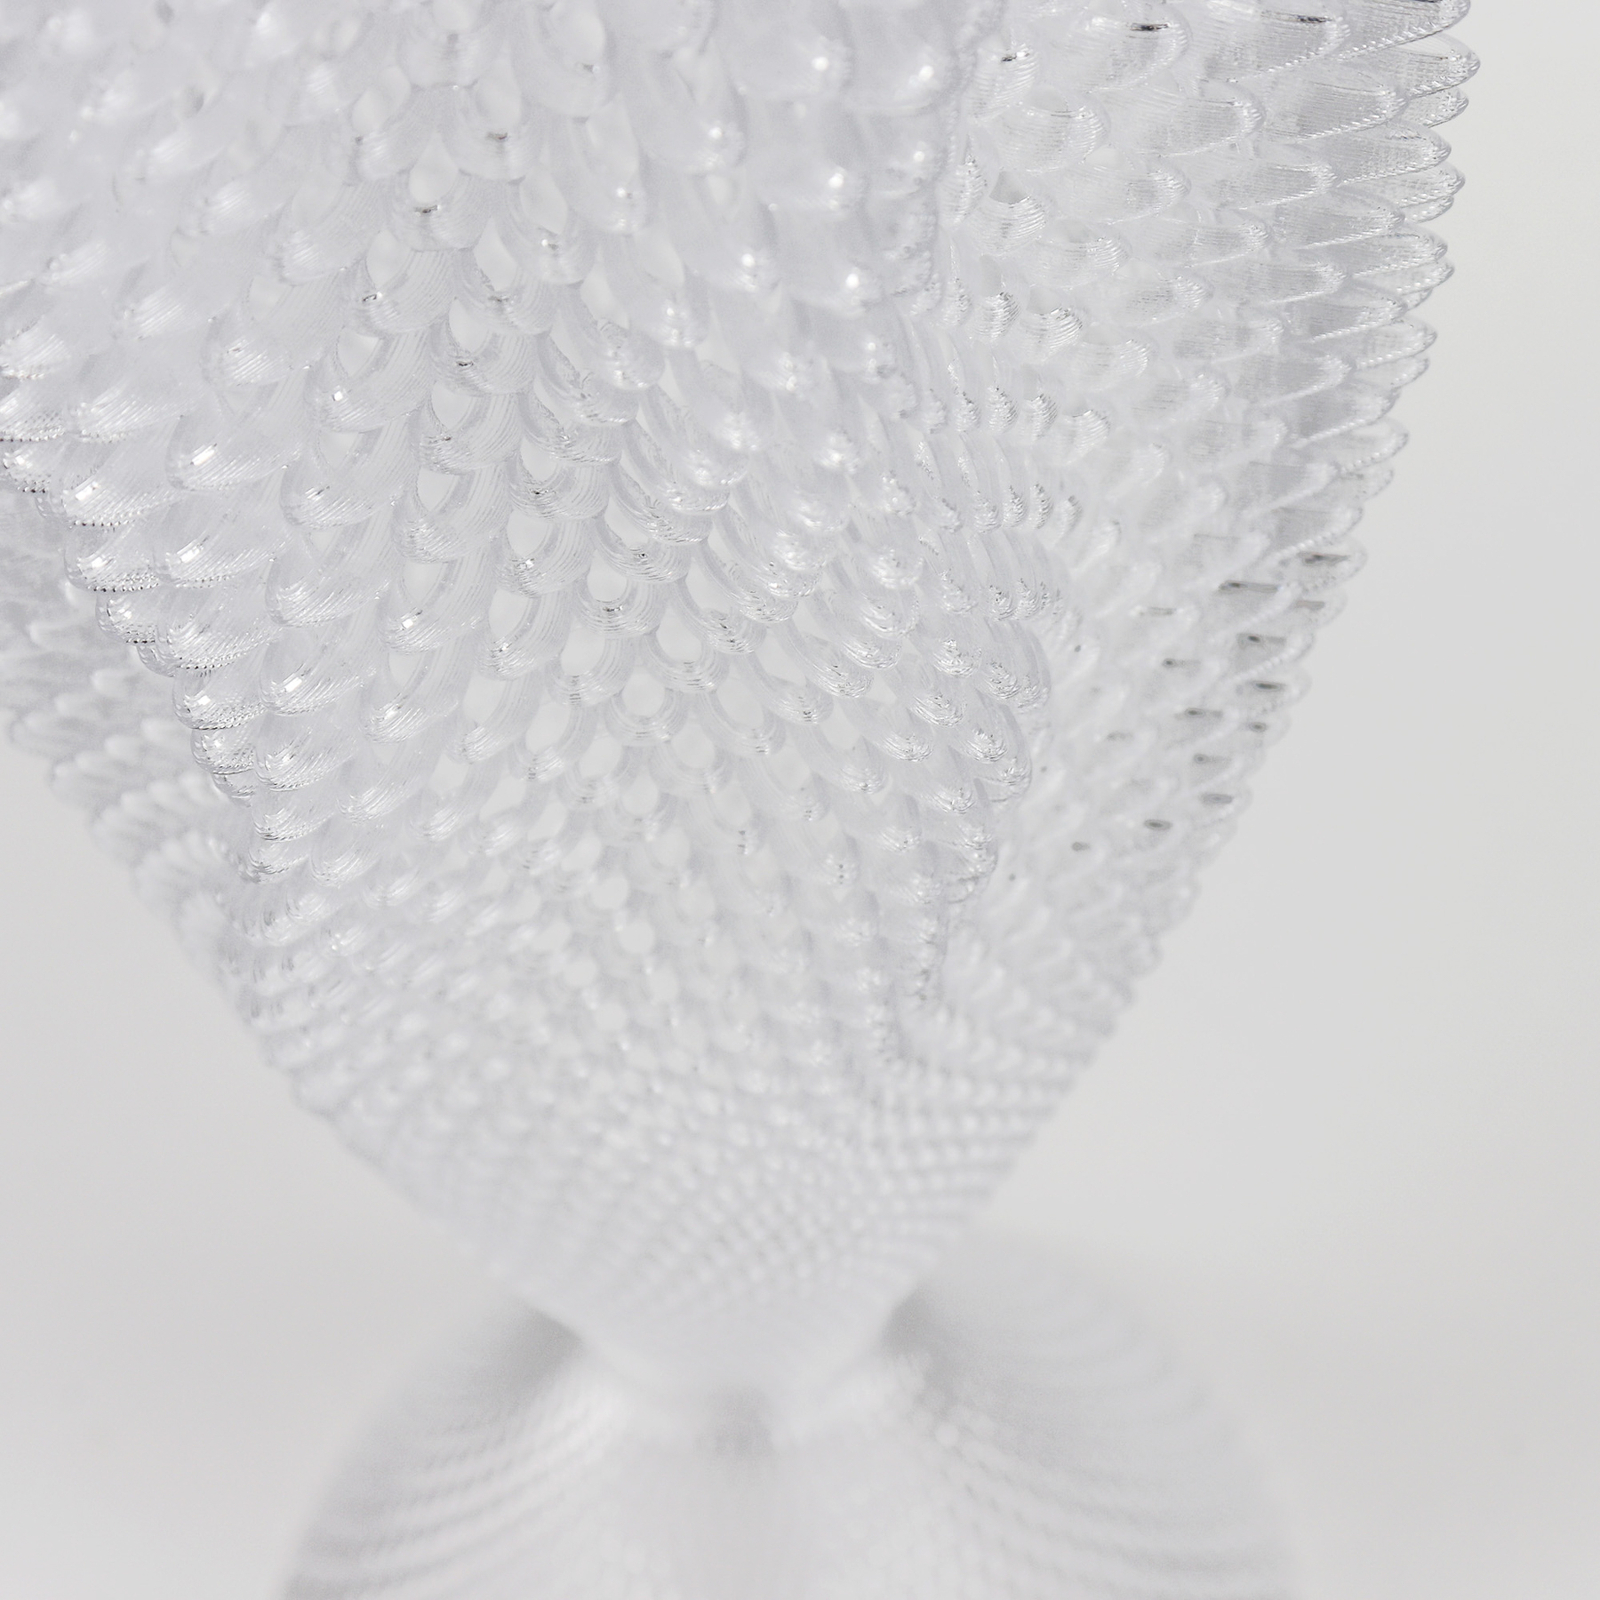 Koral asztali lámpa bio anyagból, kristálytiszta 65 cm